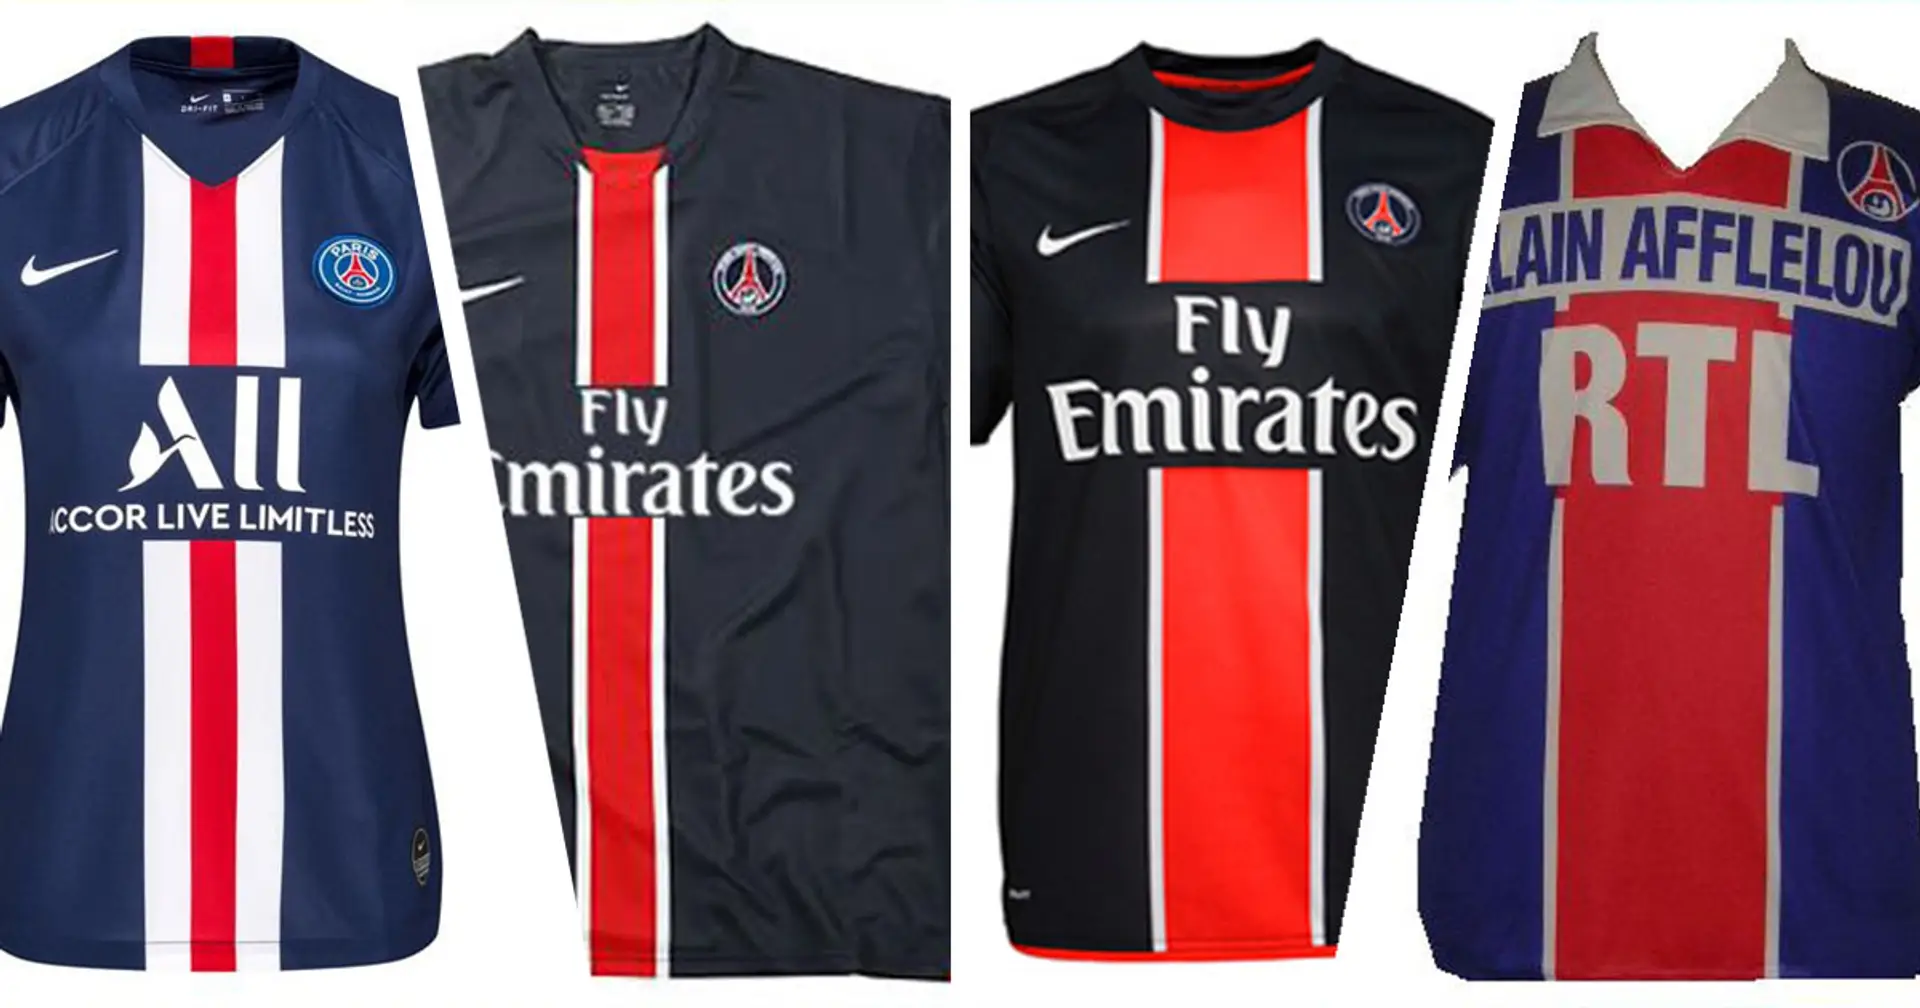 👕 Le maillot Hechter ou celui de la saison 19/20? Quel est votre maillot du PSG préféré? Donnez votre avis en commentaire ou sur notre nouvelle plateforme de blog